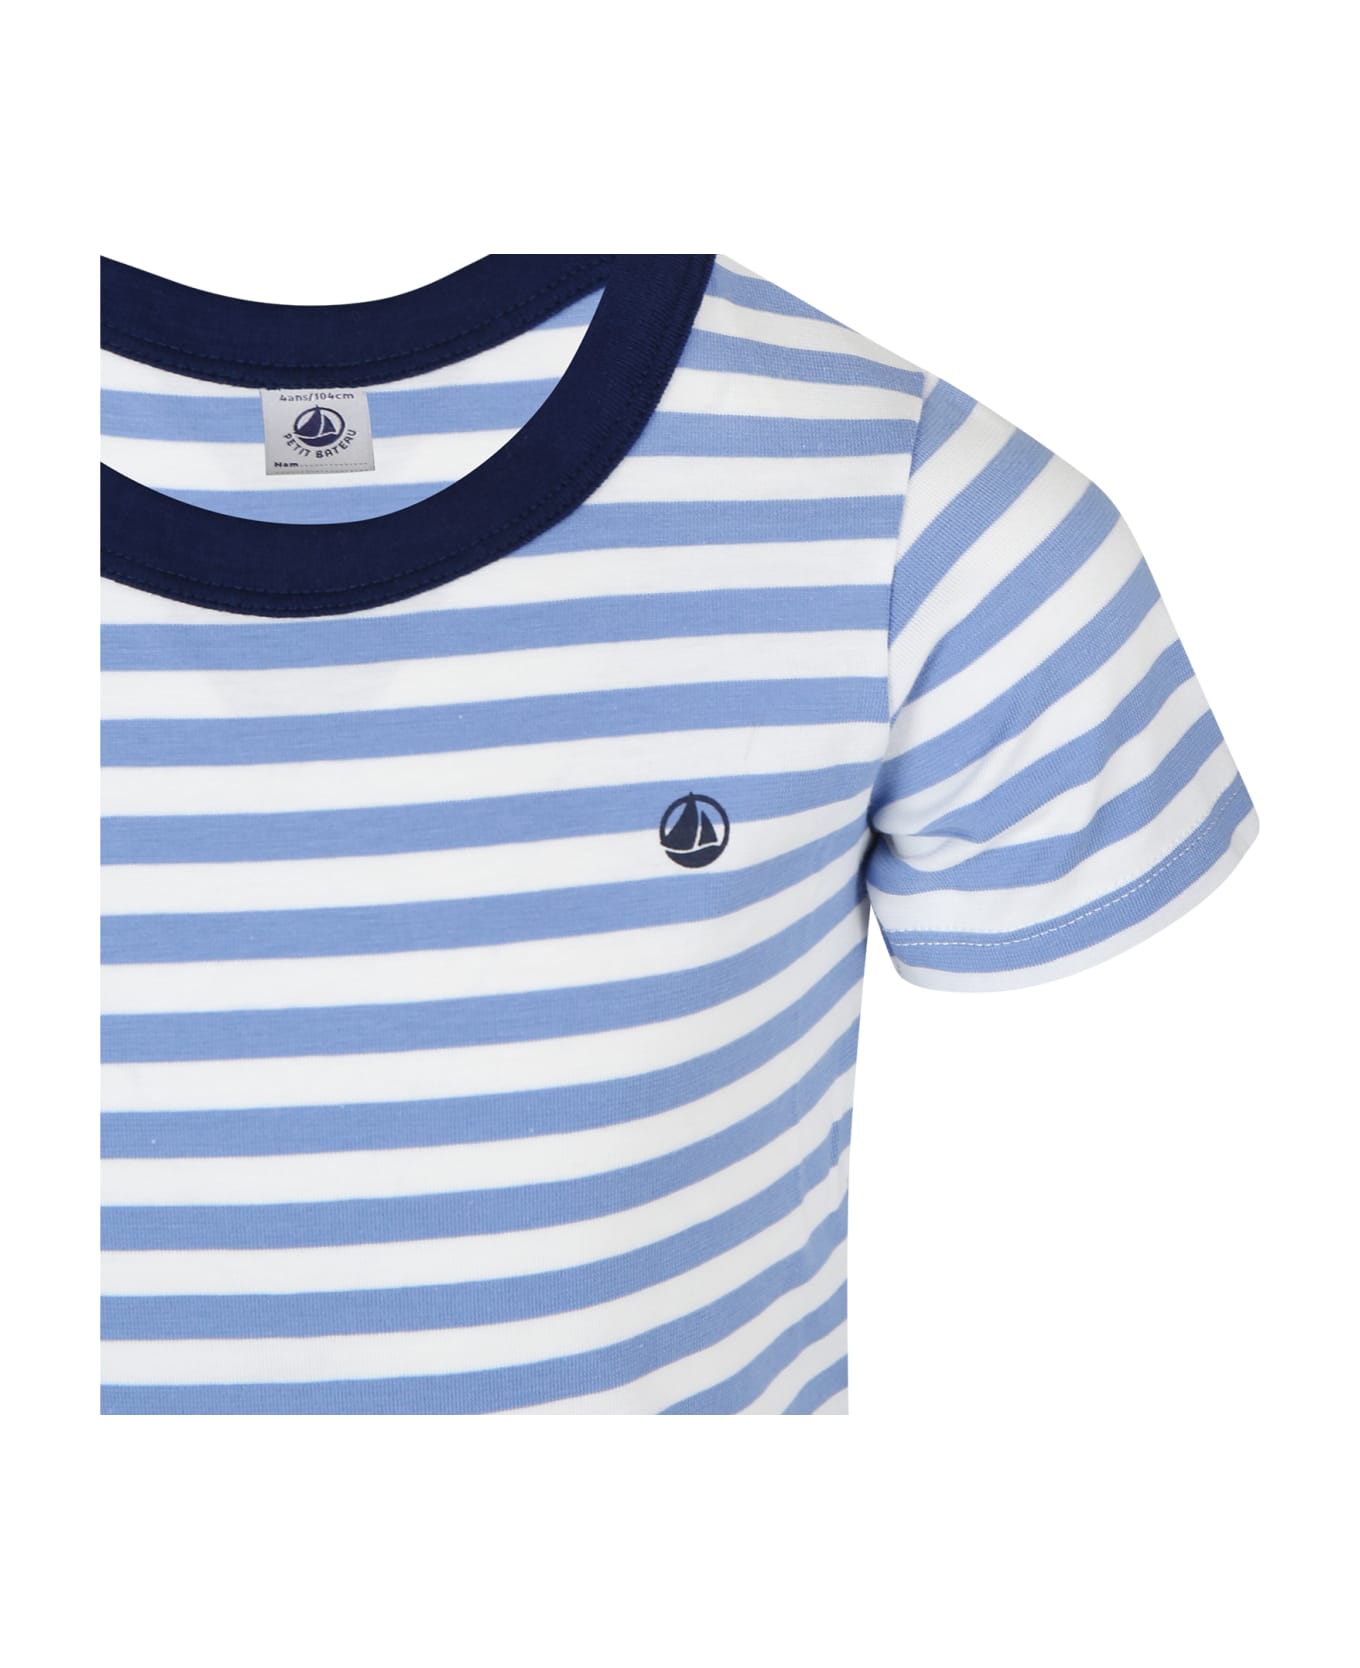 Petit Bateau Light Blue T-shirt For Boy With Stripes - Light Blue